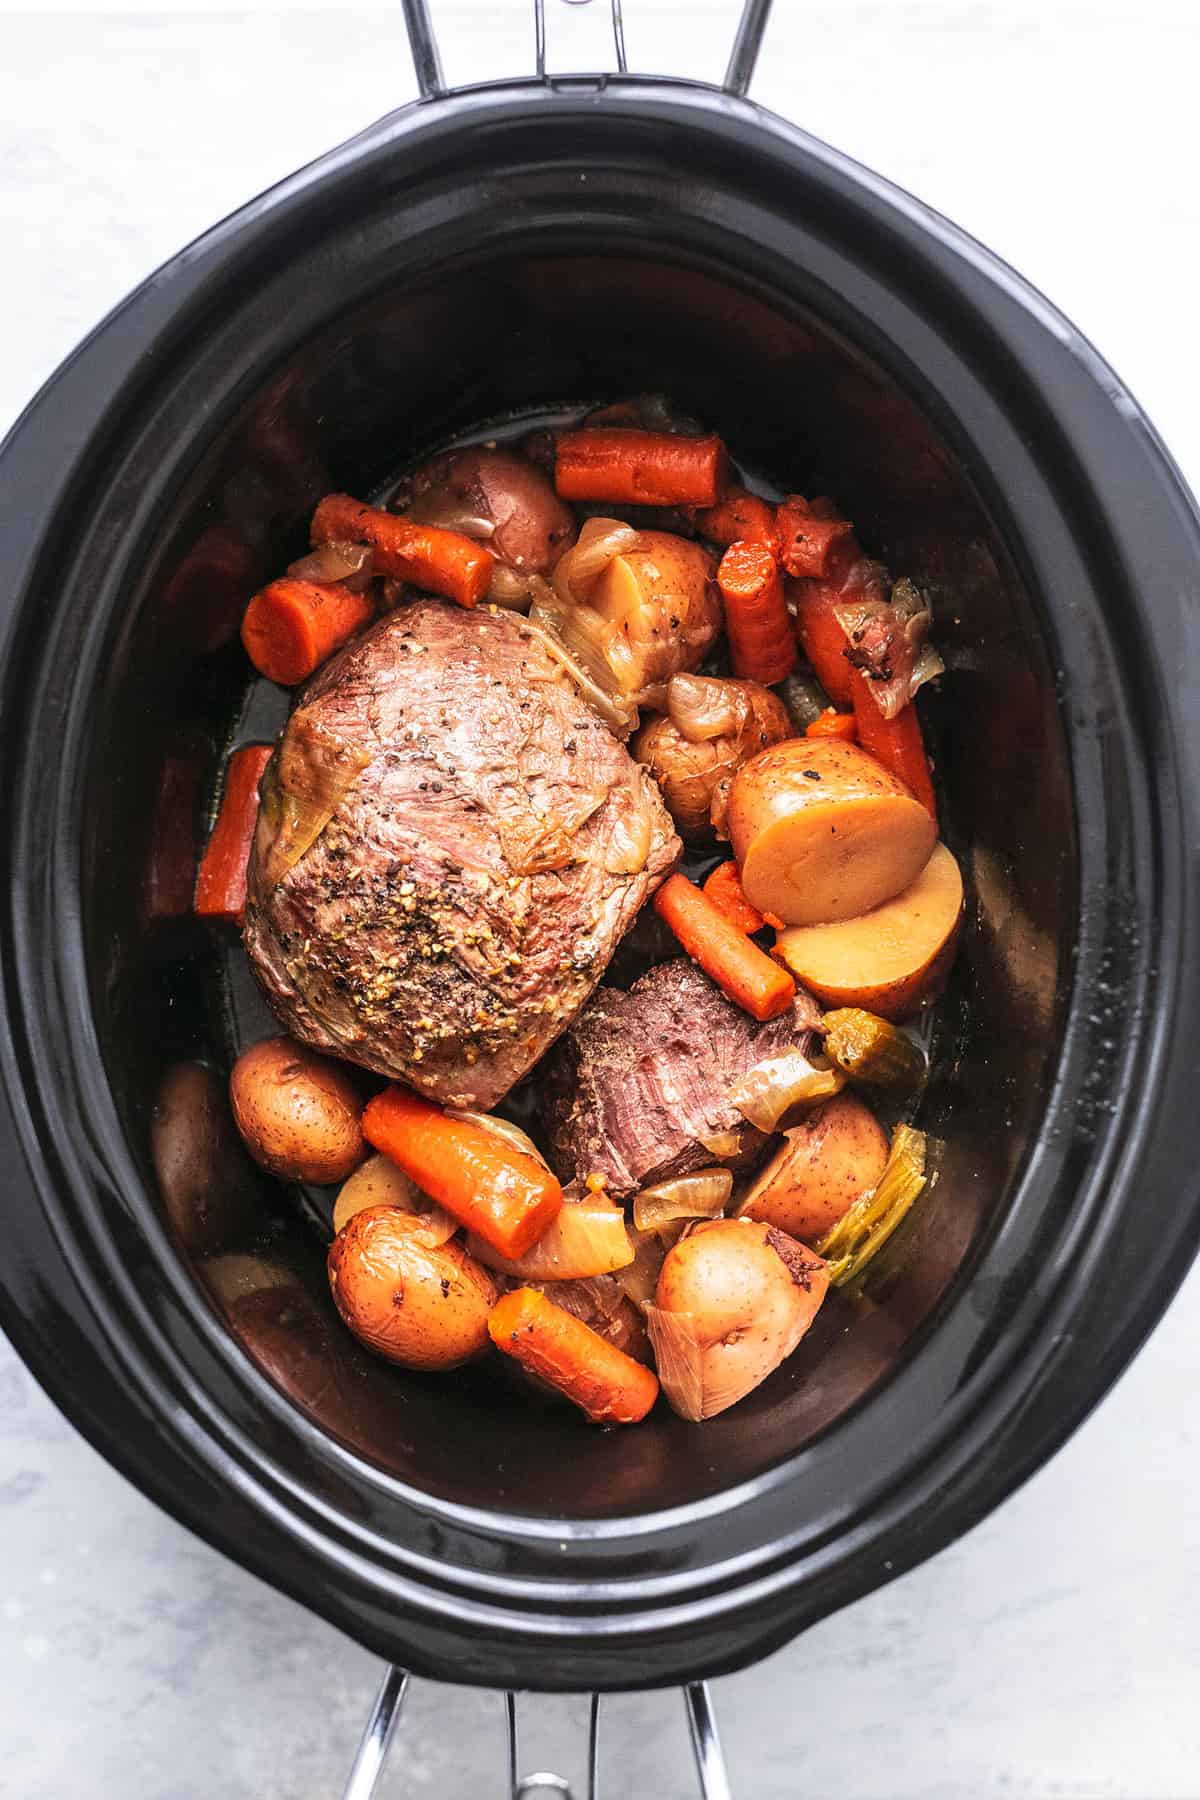 https://www.lecremedelacrumb.com/wp-content/uploads/2014/11/slow-cooker-beef-roast-2sm-1.jpg